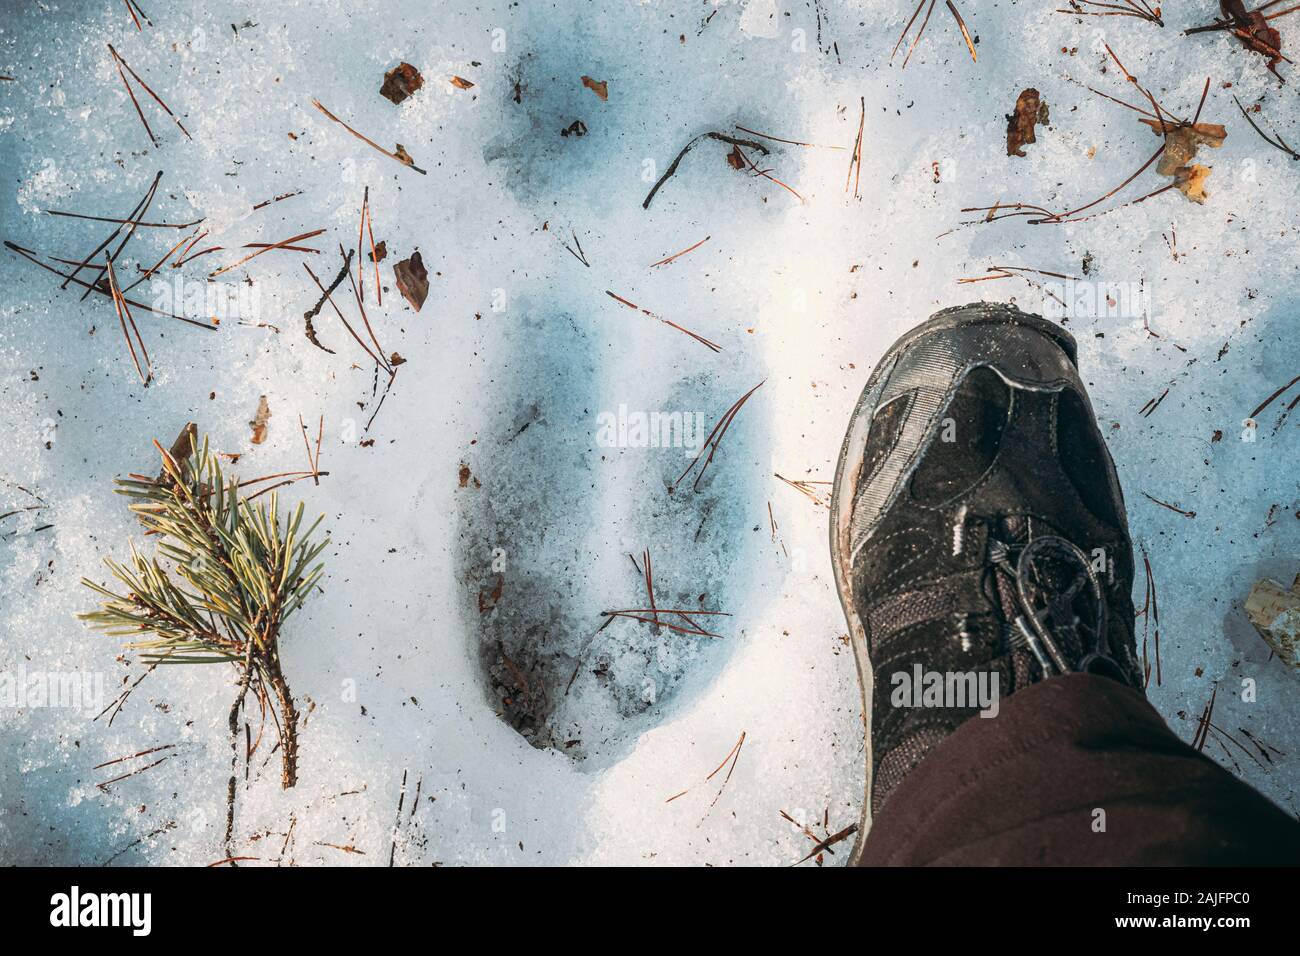 Impressum Eines Elk Trail auf Schnee. Vergleich mit der Größe einer Person. Elche Trail auf Waldboden im Winter. Weißrussland oder Europäischen Teil R Stockfoto